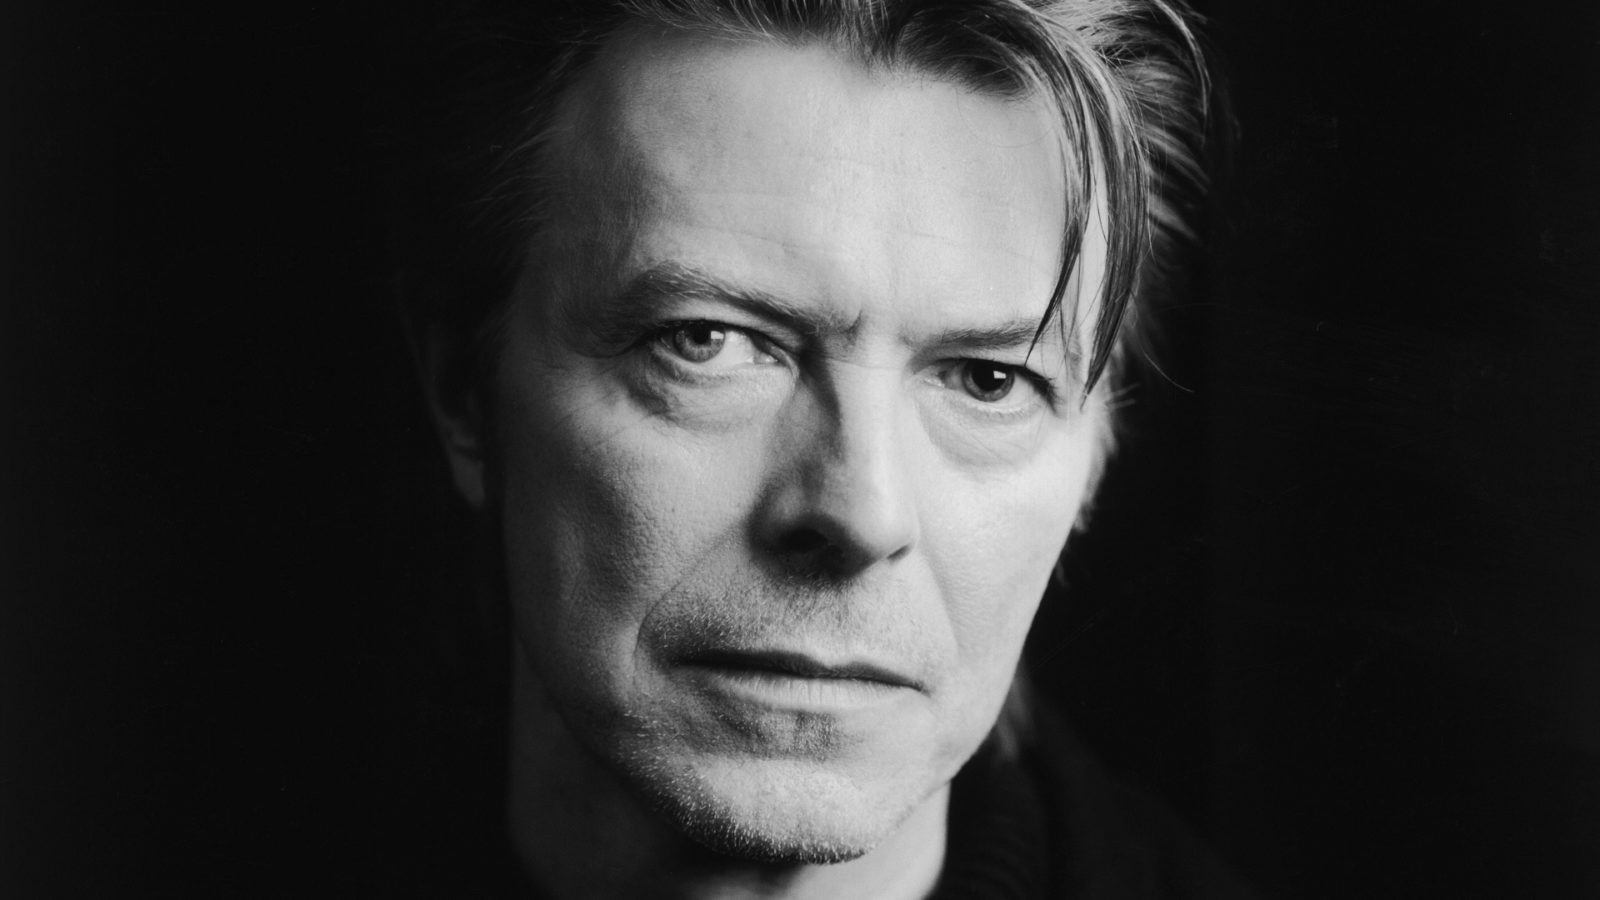 VIDÉO 14 – Blackstar, le nouveau clip fascinant de David Bowie